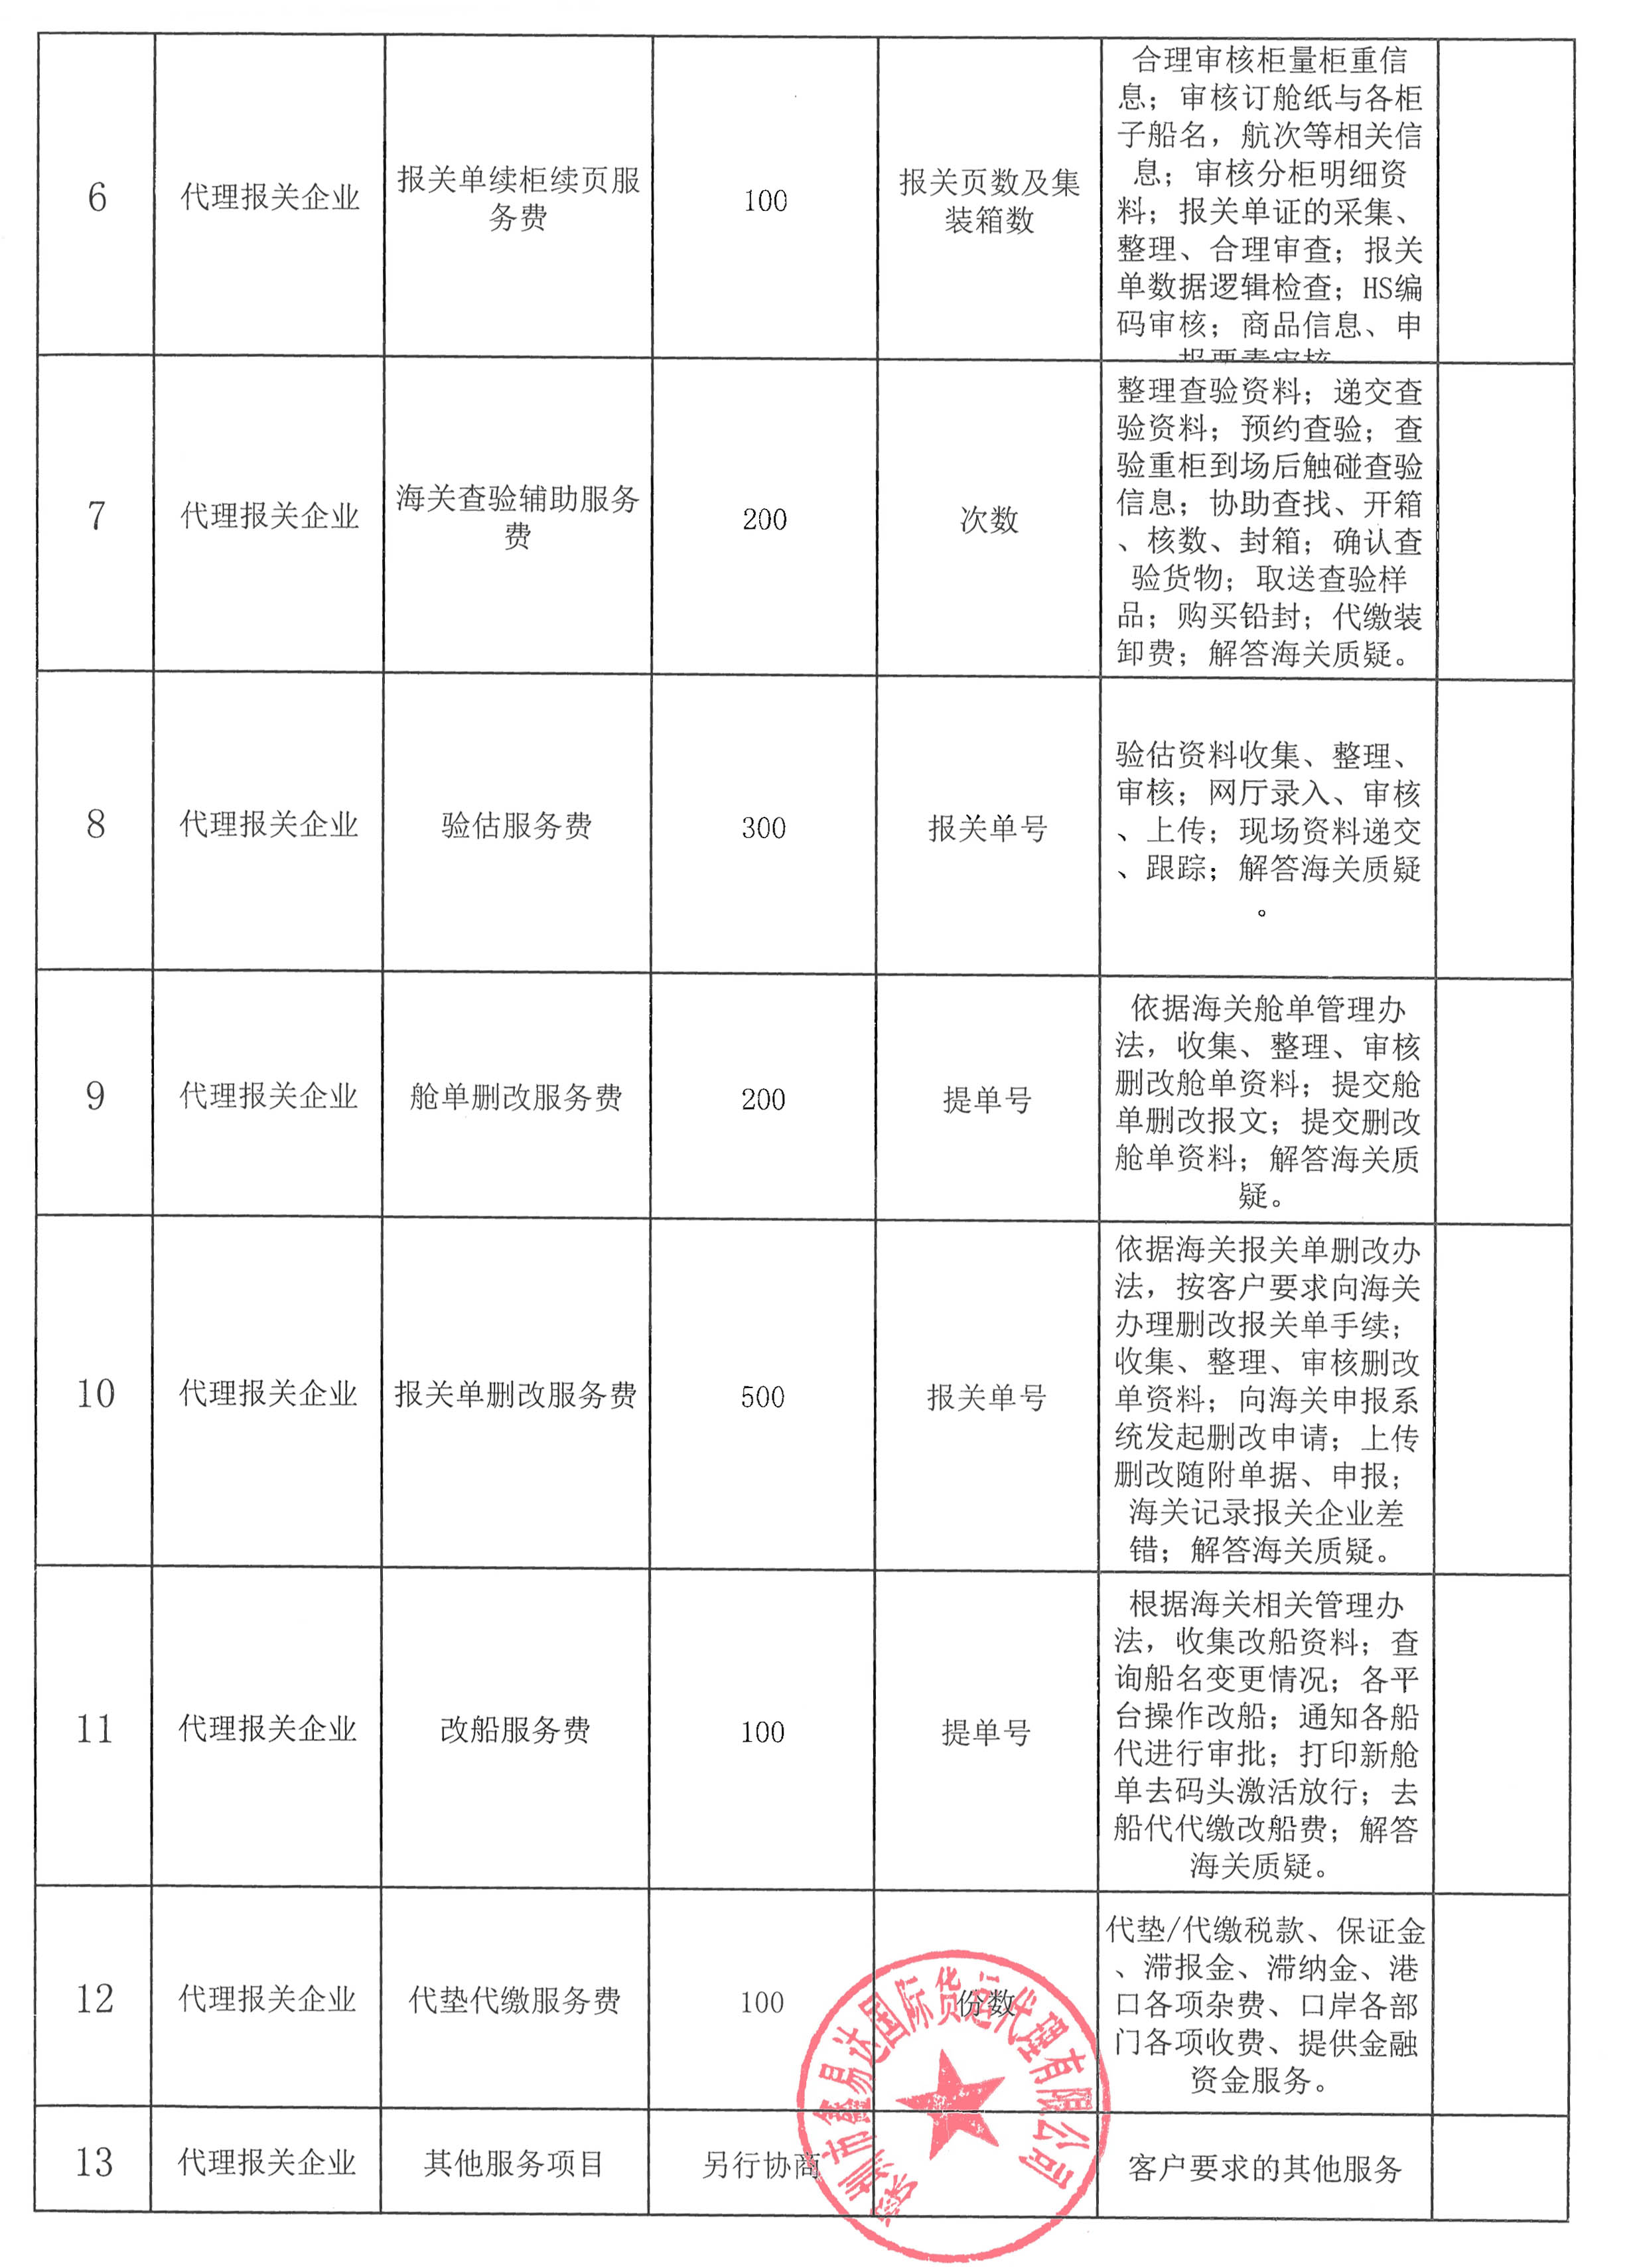 深圳市鑫易达国际货运代理有限公司收费目录清单_2.jpg